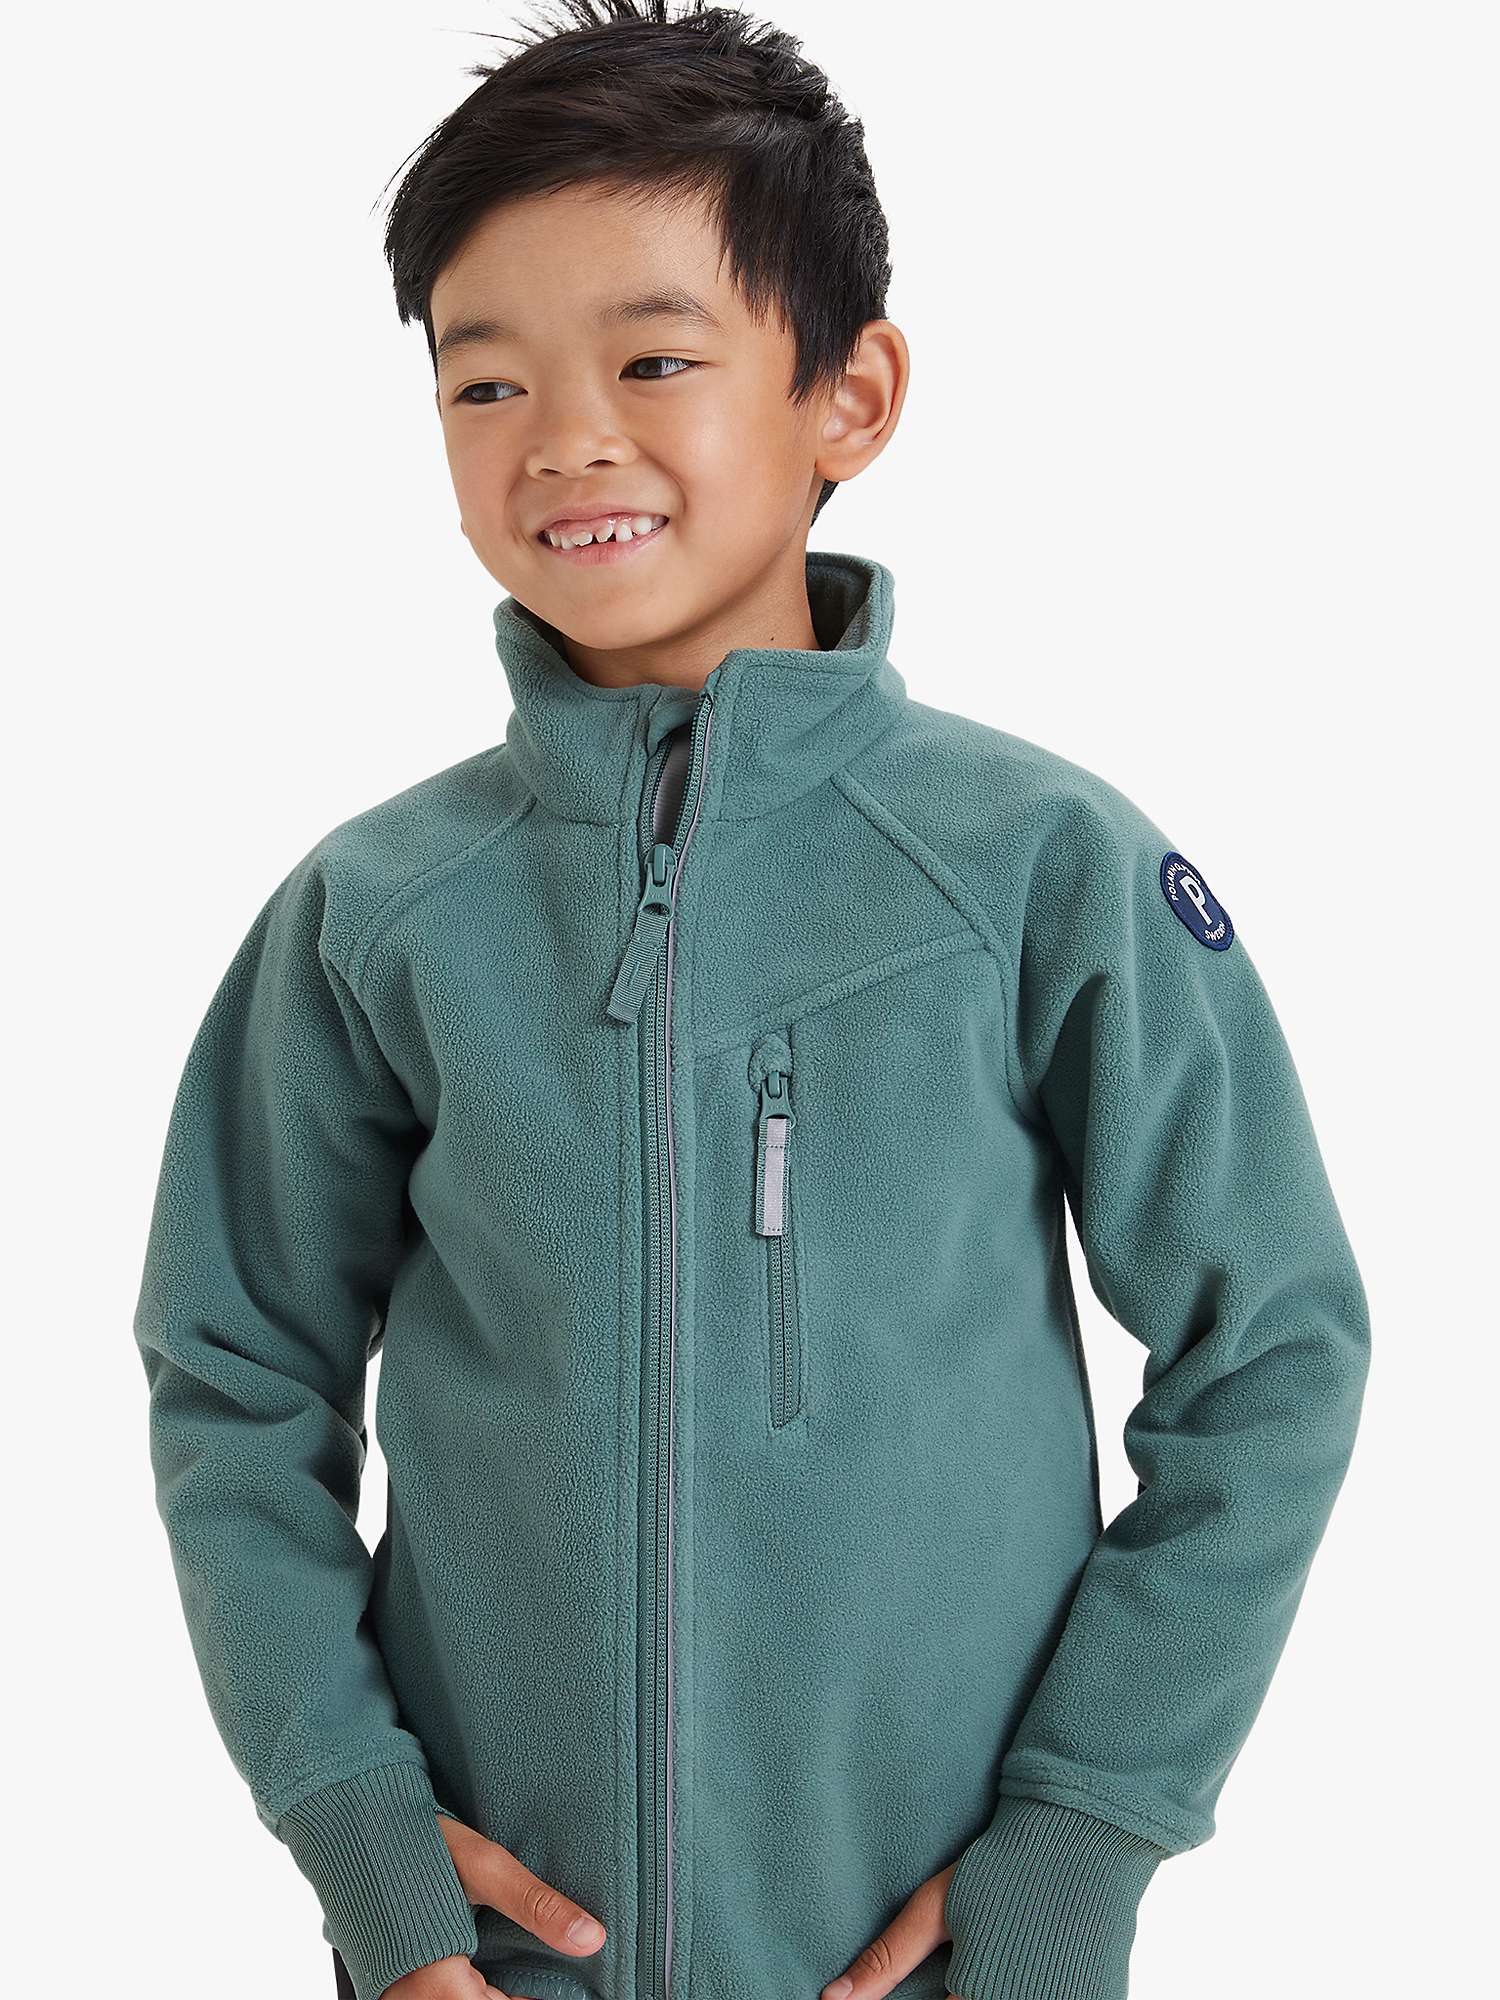 Buy Polarn O. Pyret Kids' Fleece Jacket Online at johnlewis.com